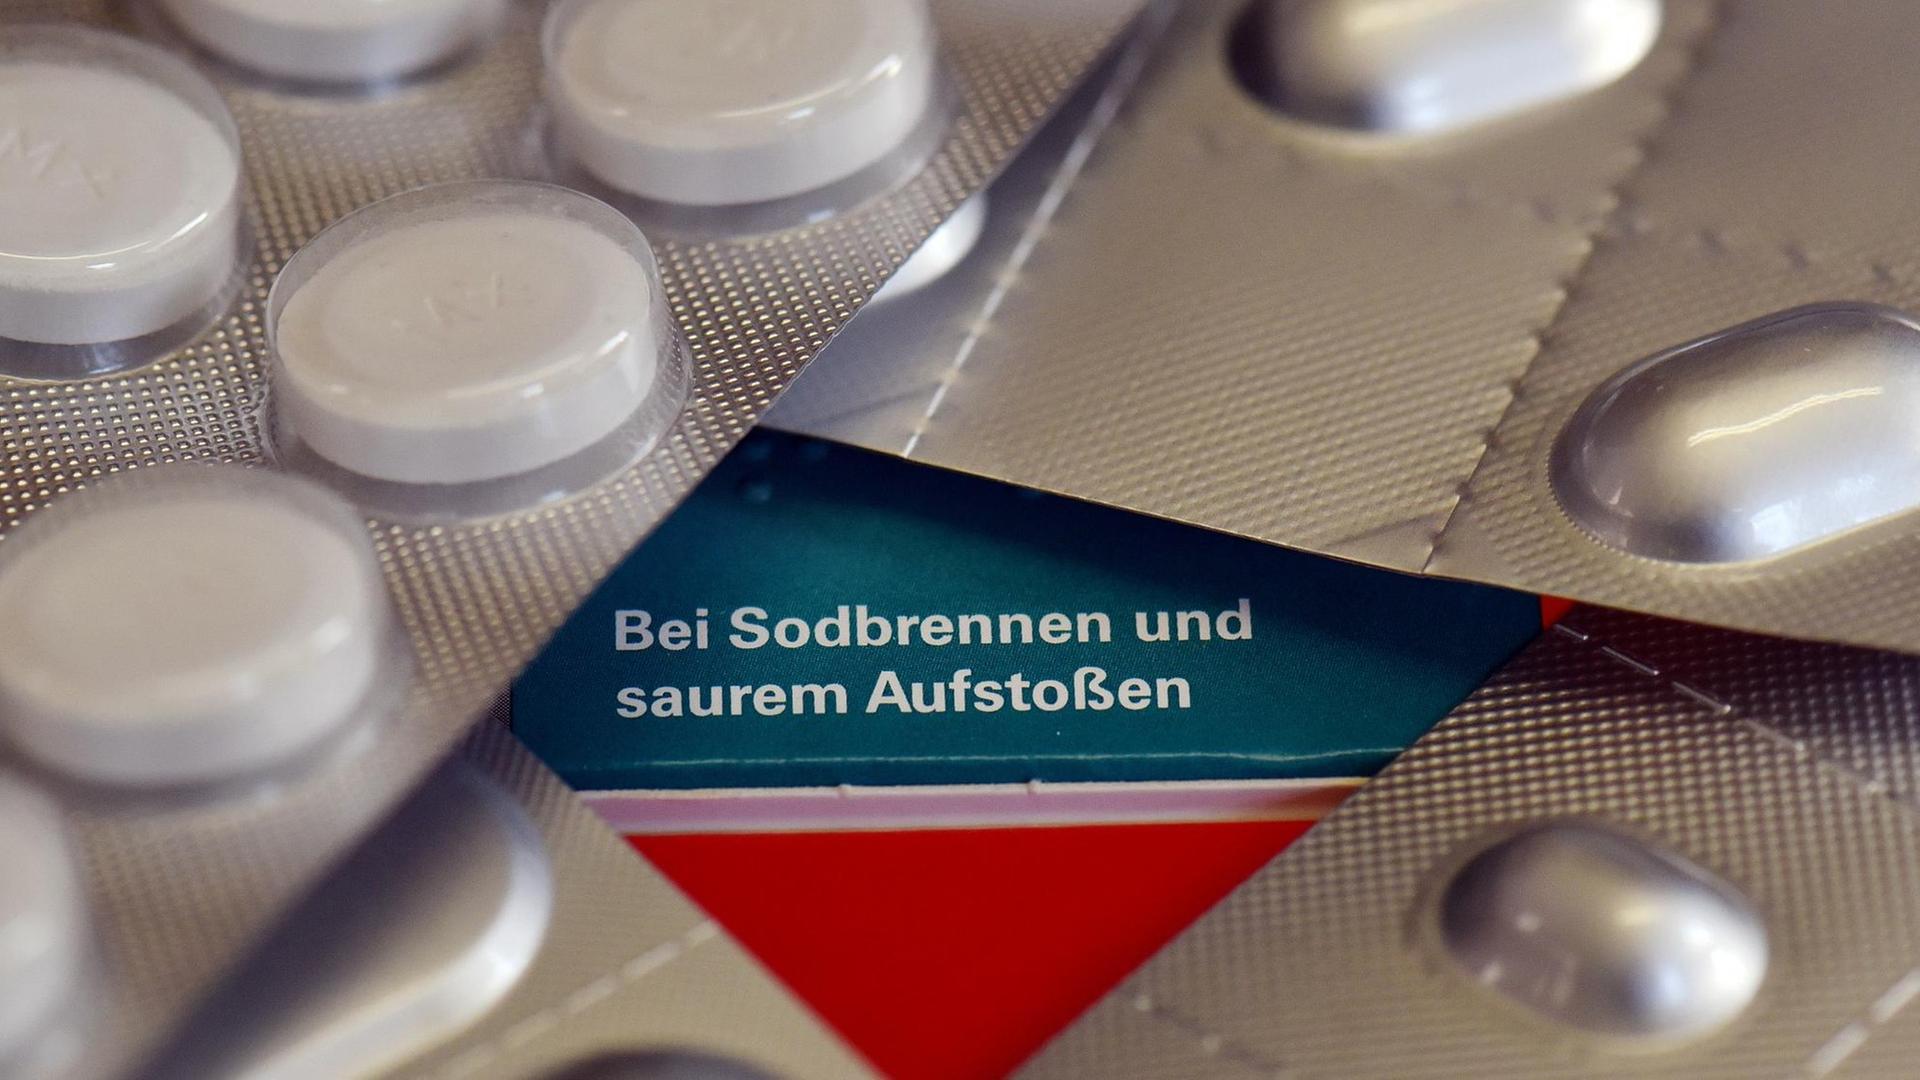 "Bei Sodbrennen und saurem Aufstoßen" steht auf einer Verpackung von Tabletten gegen Sodbrennen, Aufstoßen oder Magenschmerzen.